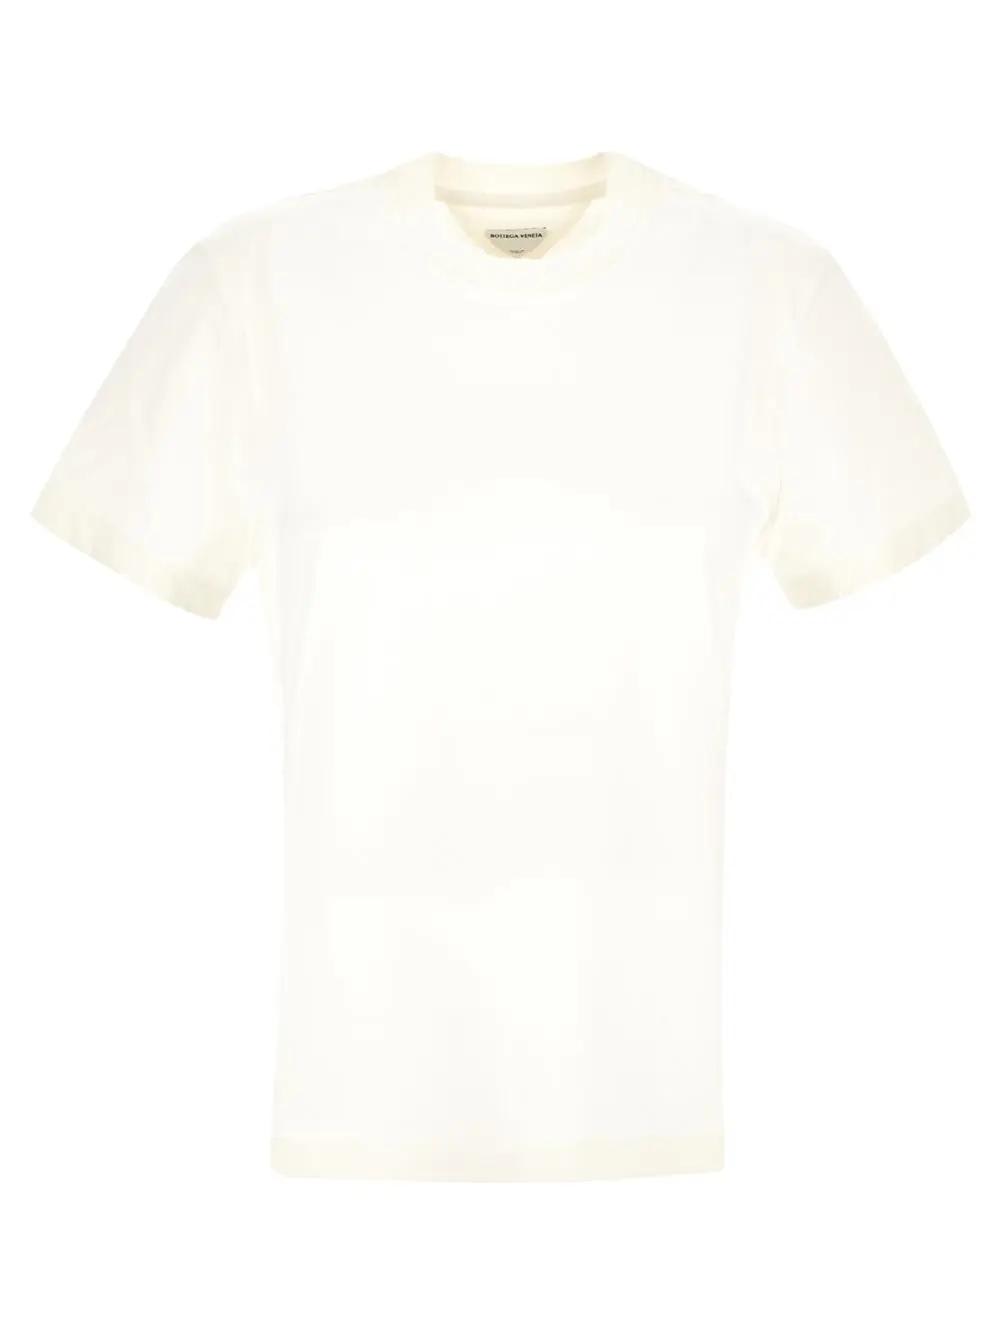 Bottega Veneta Light Cotton T-shirt